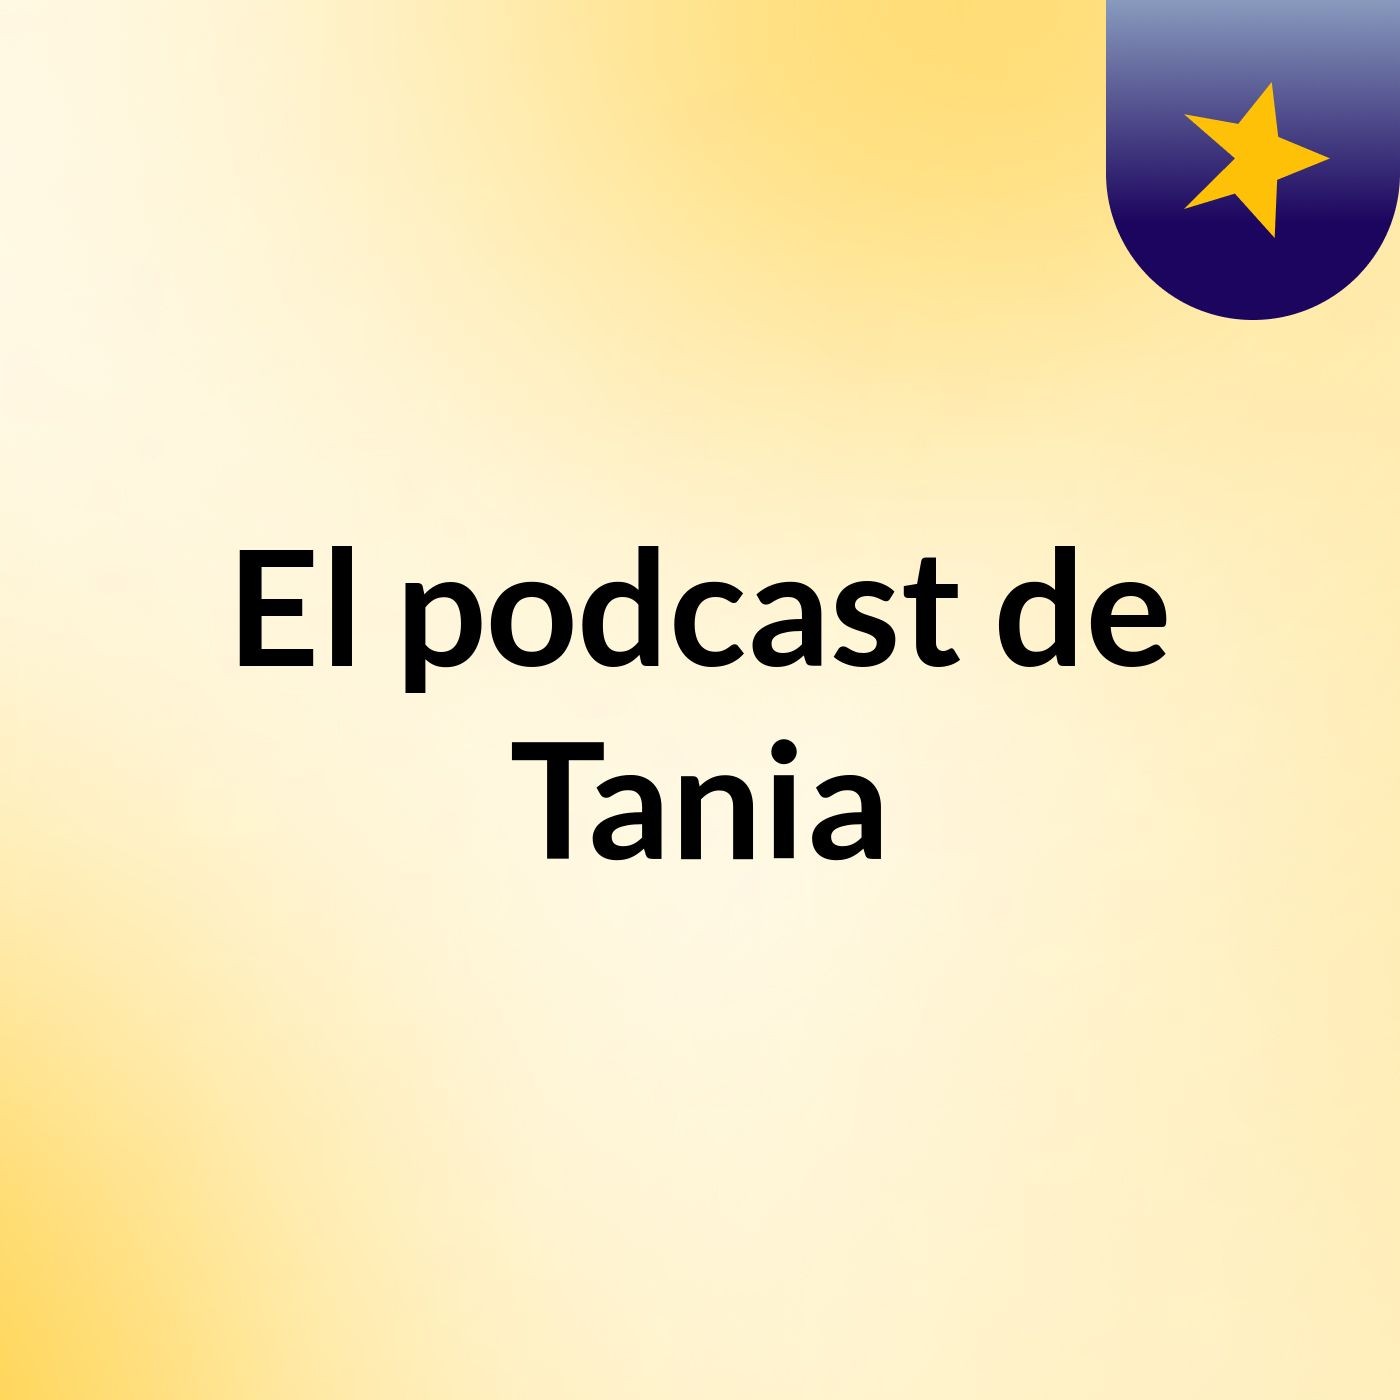 El podcast de Tania